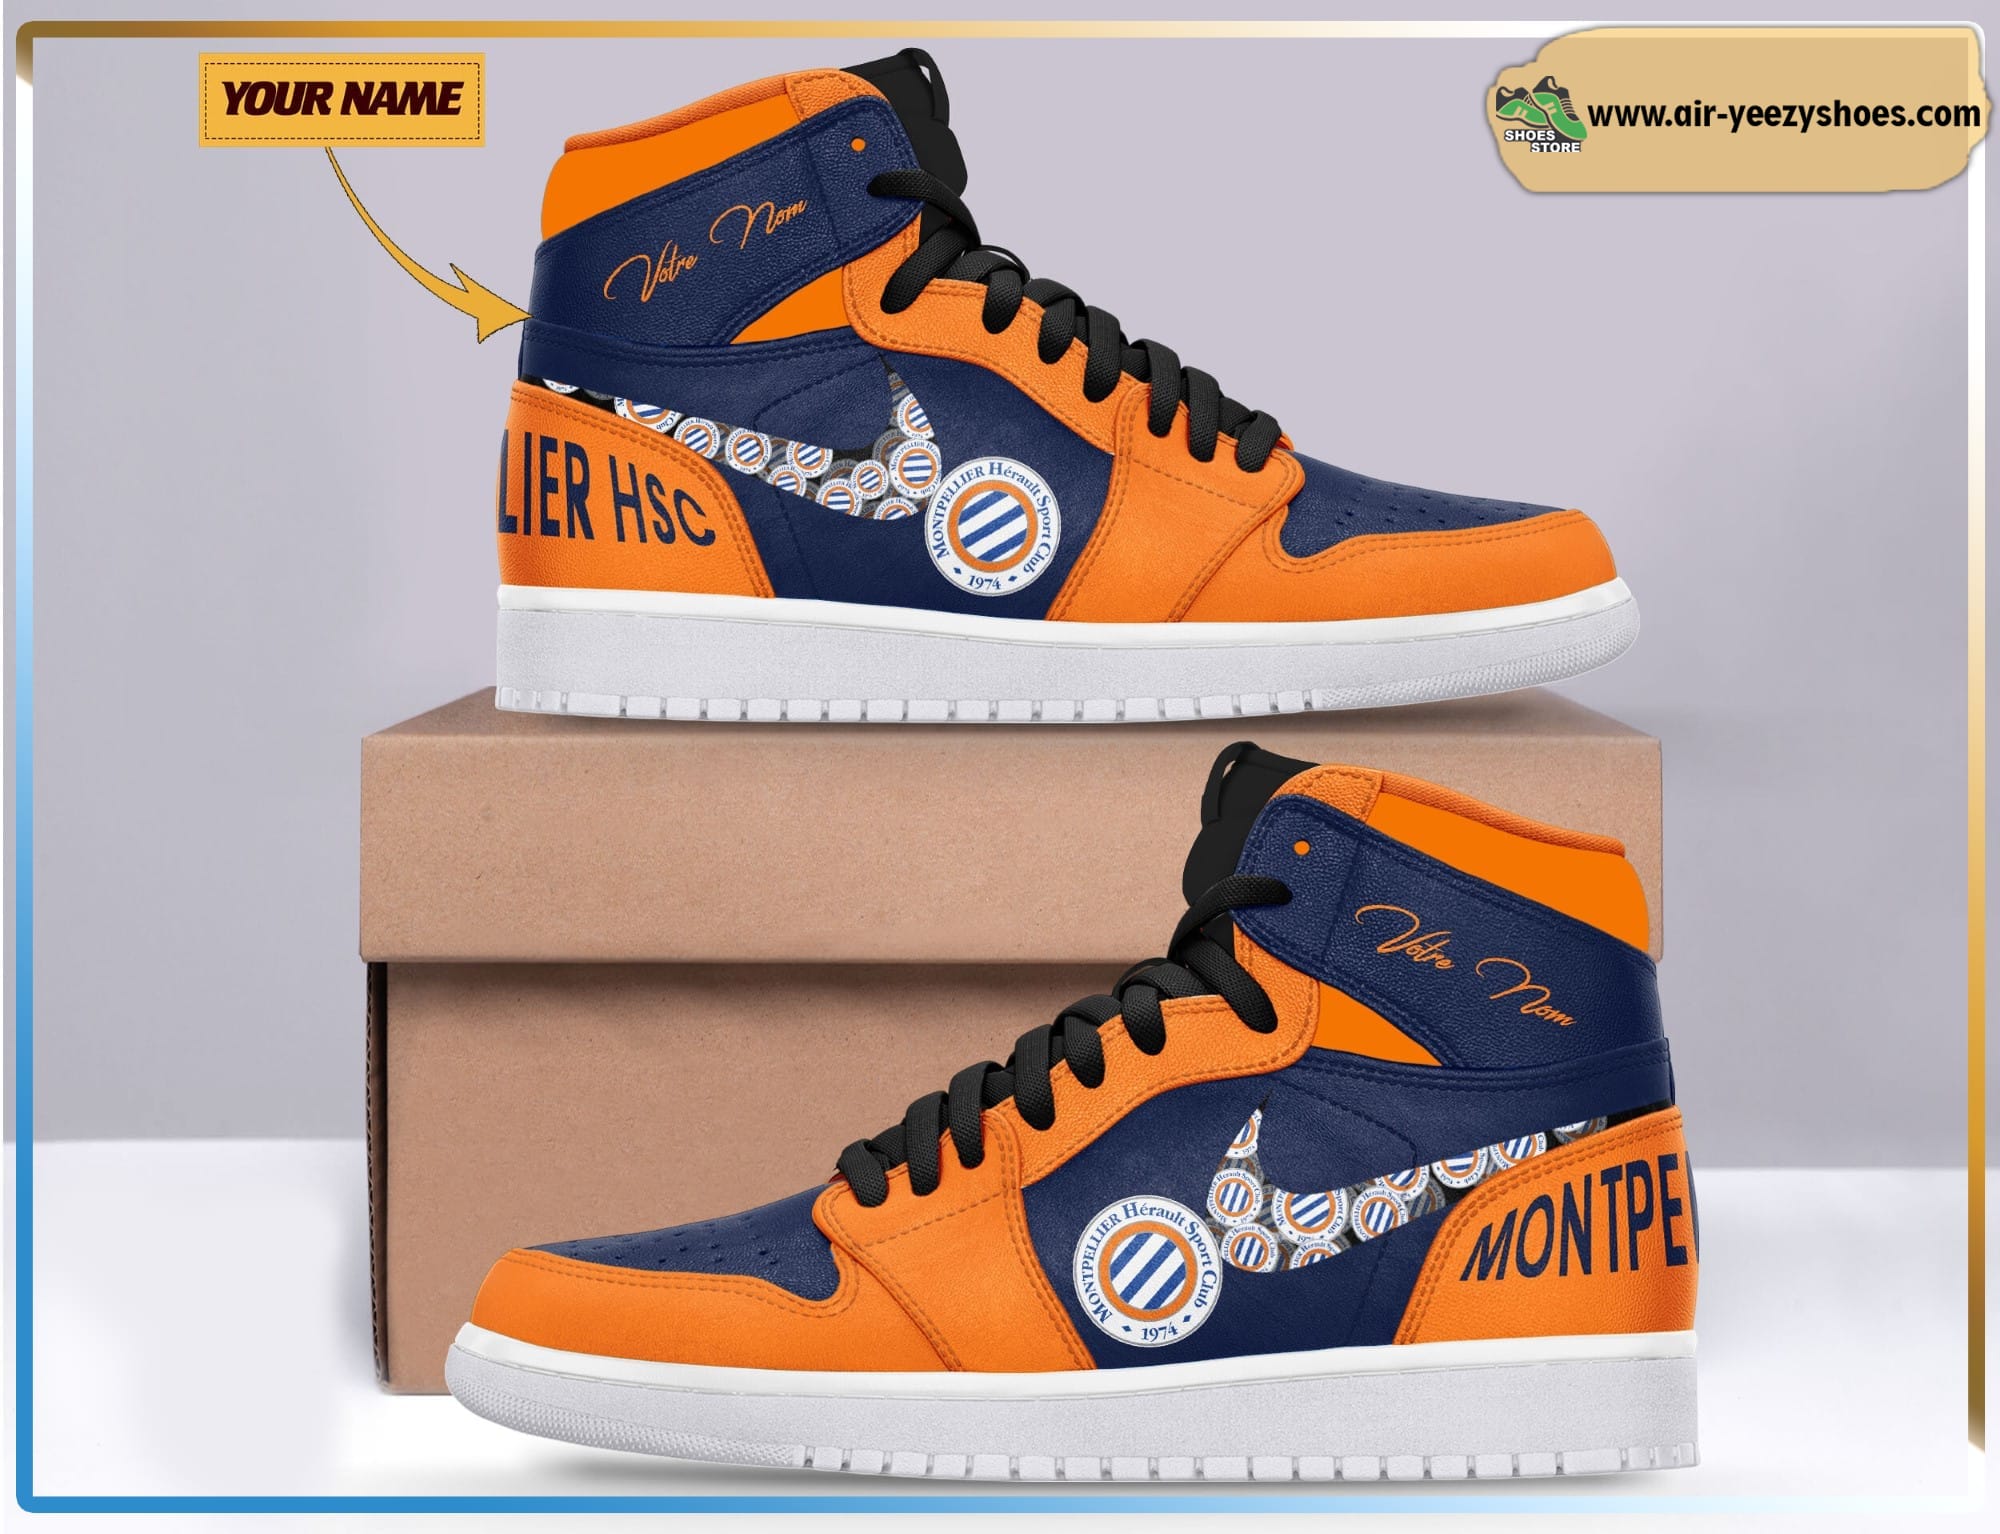 Montpellier HSC Ligue 1 Air Jodan 1 High Top Sneaker Boots